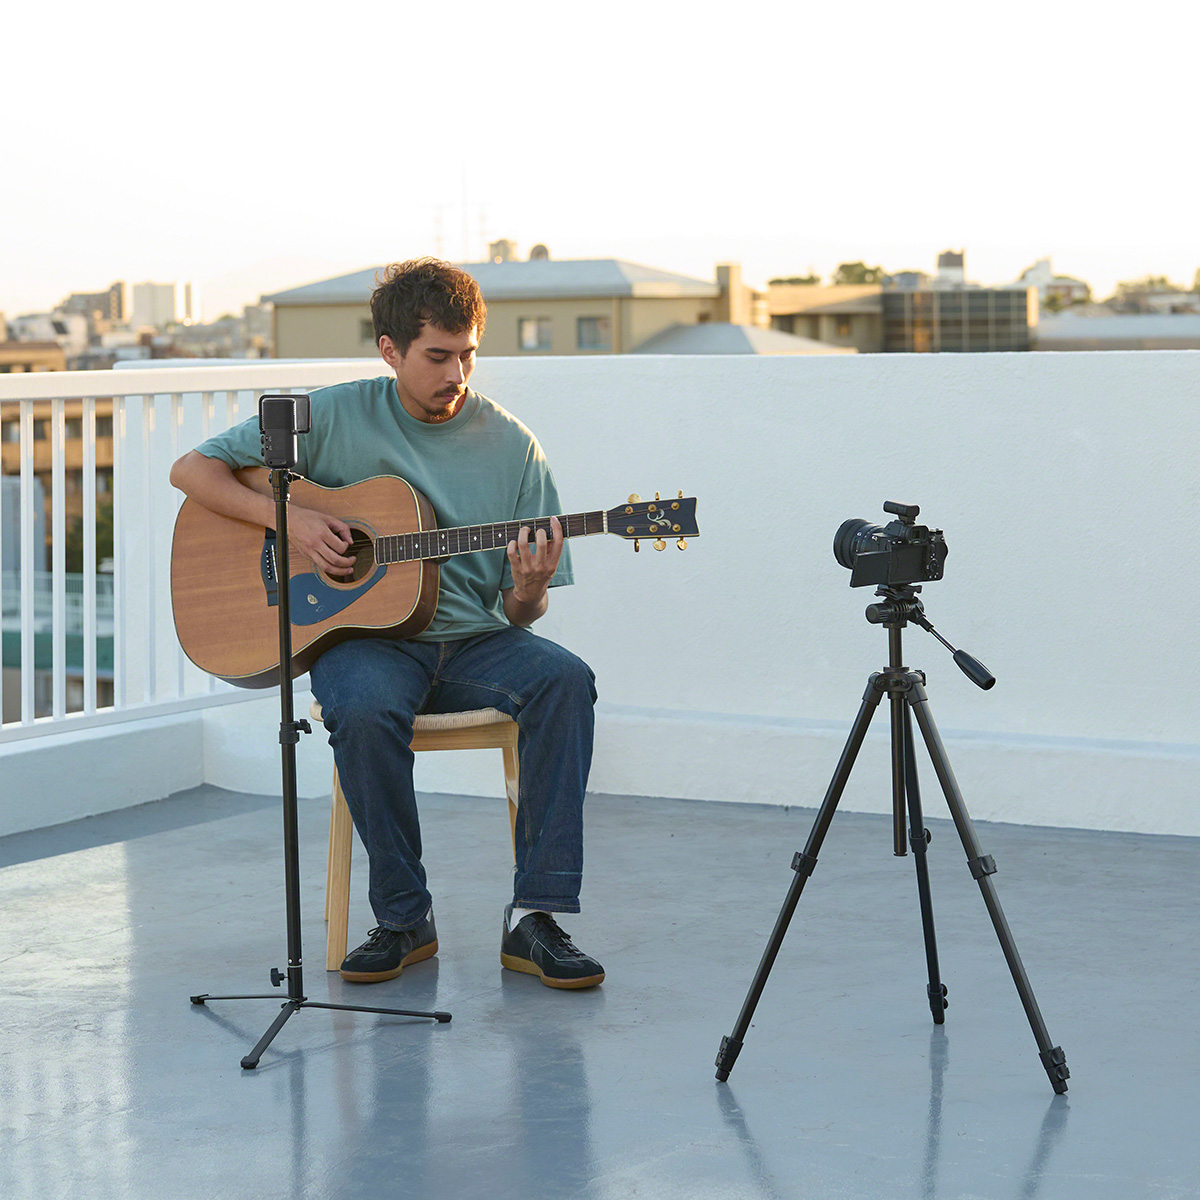 Gitarrist nimmt seine Musik mit einem Sony ECM-S1 Mikrofon auf einem Stativ auf einem Balkon auf